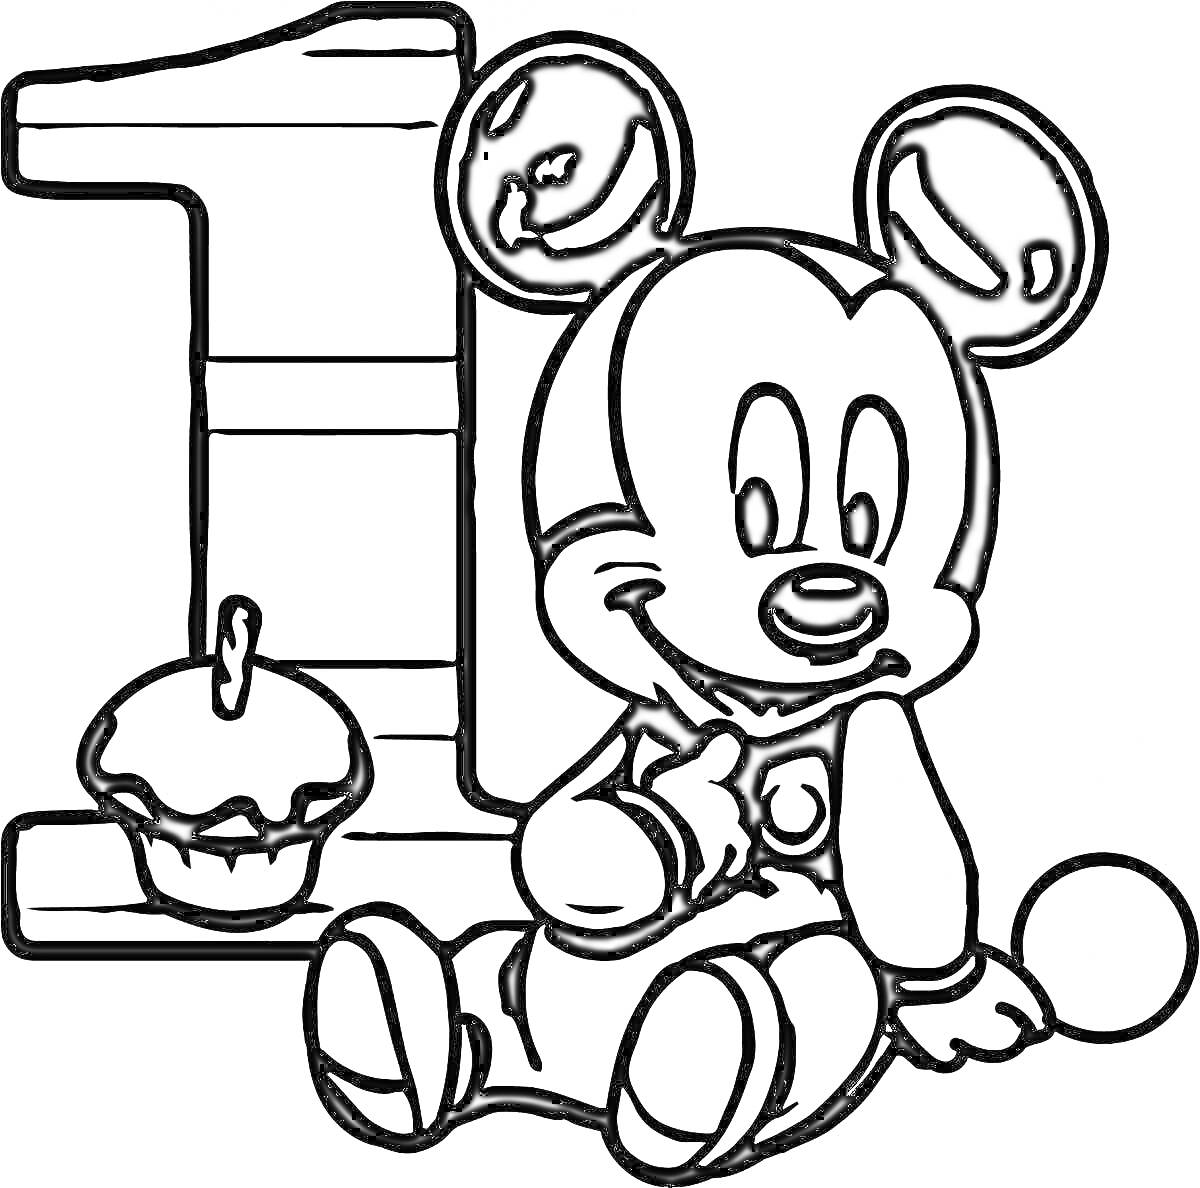 Раскраска Цифра 1, маленький мальчик в костюме мышонка, кекс с свечой